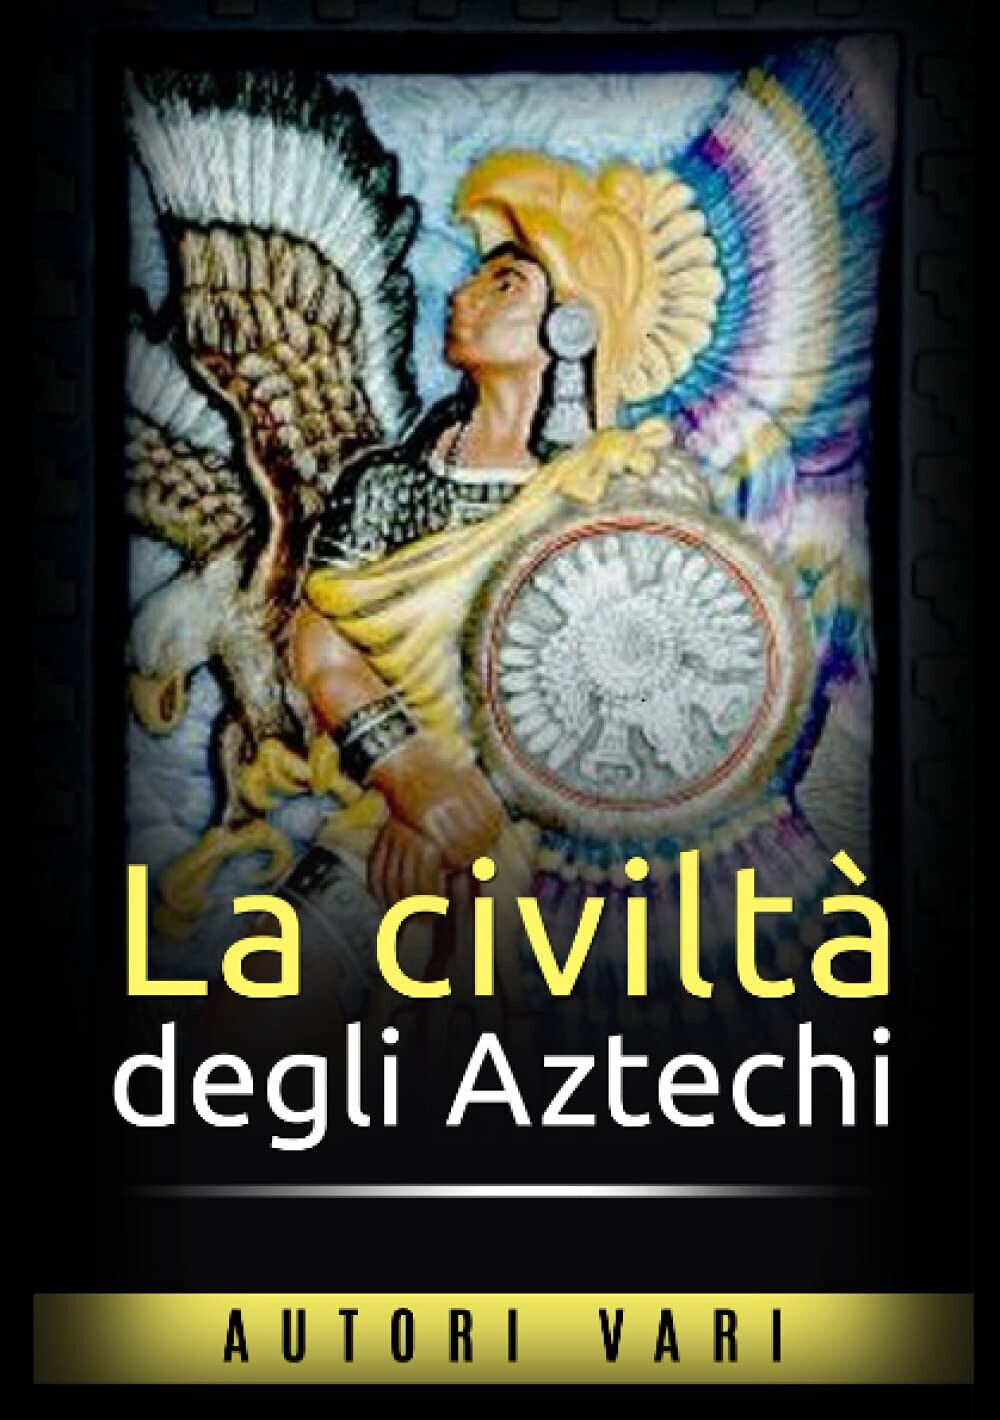 La civilt? degli aztechi - AUTORI VARI - StreetLib, 2021 libro usato